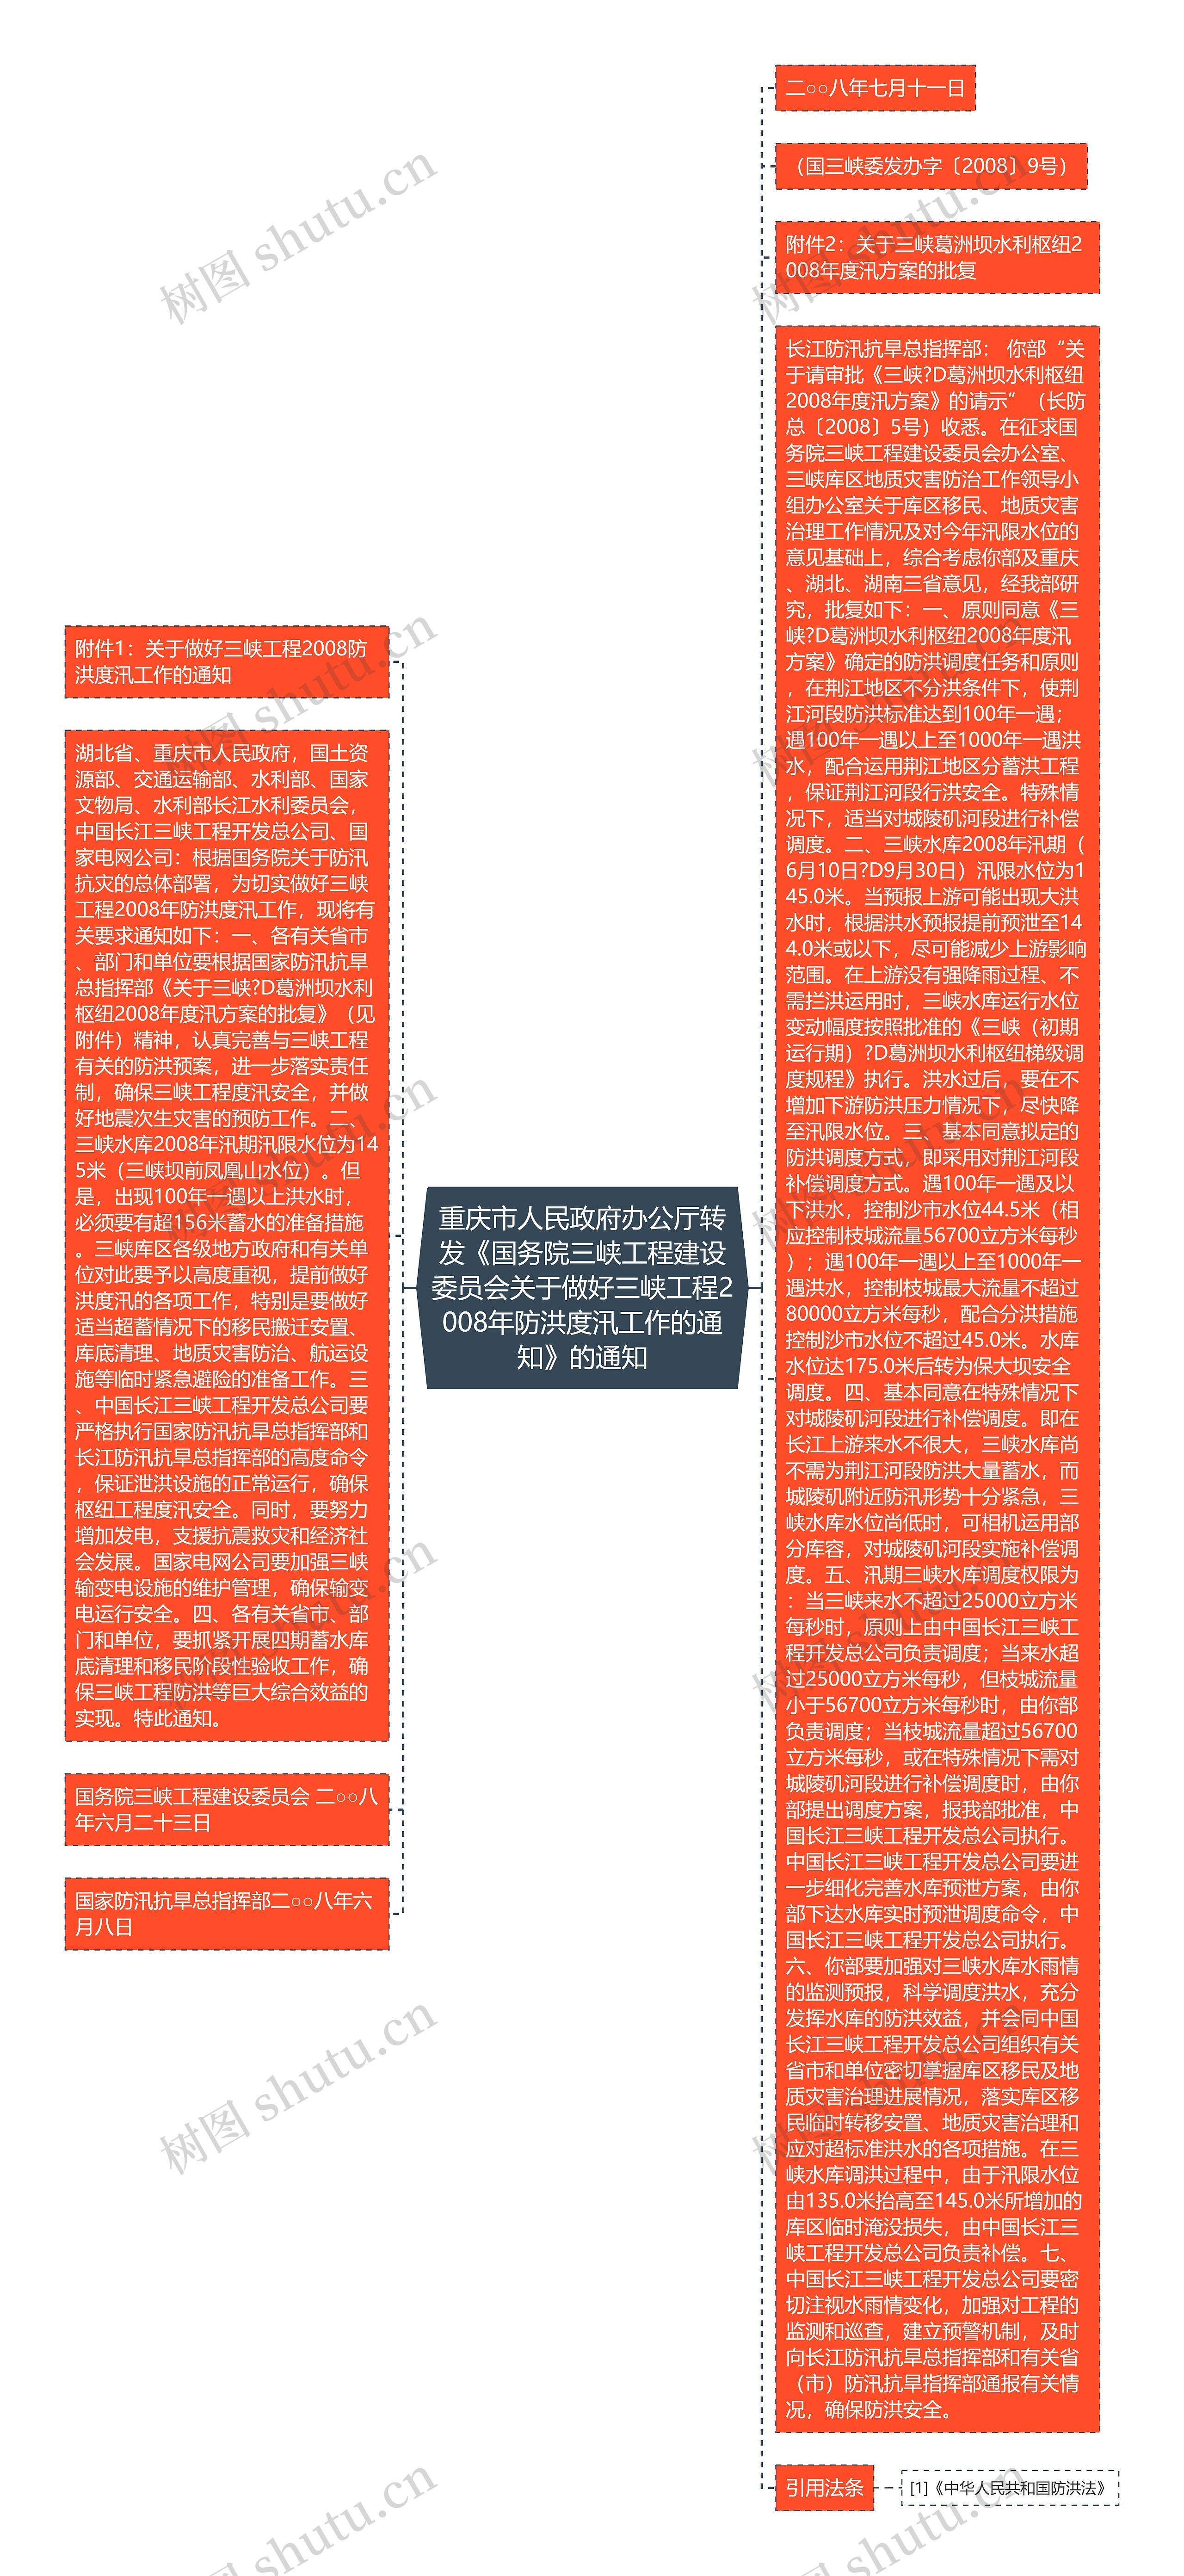 重庆市人民政府办公厅转发《国务院三峡工程建设委员会关于做好三峡工程2008年防洪度汛工作的通知》的通知思维导图